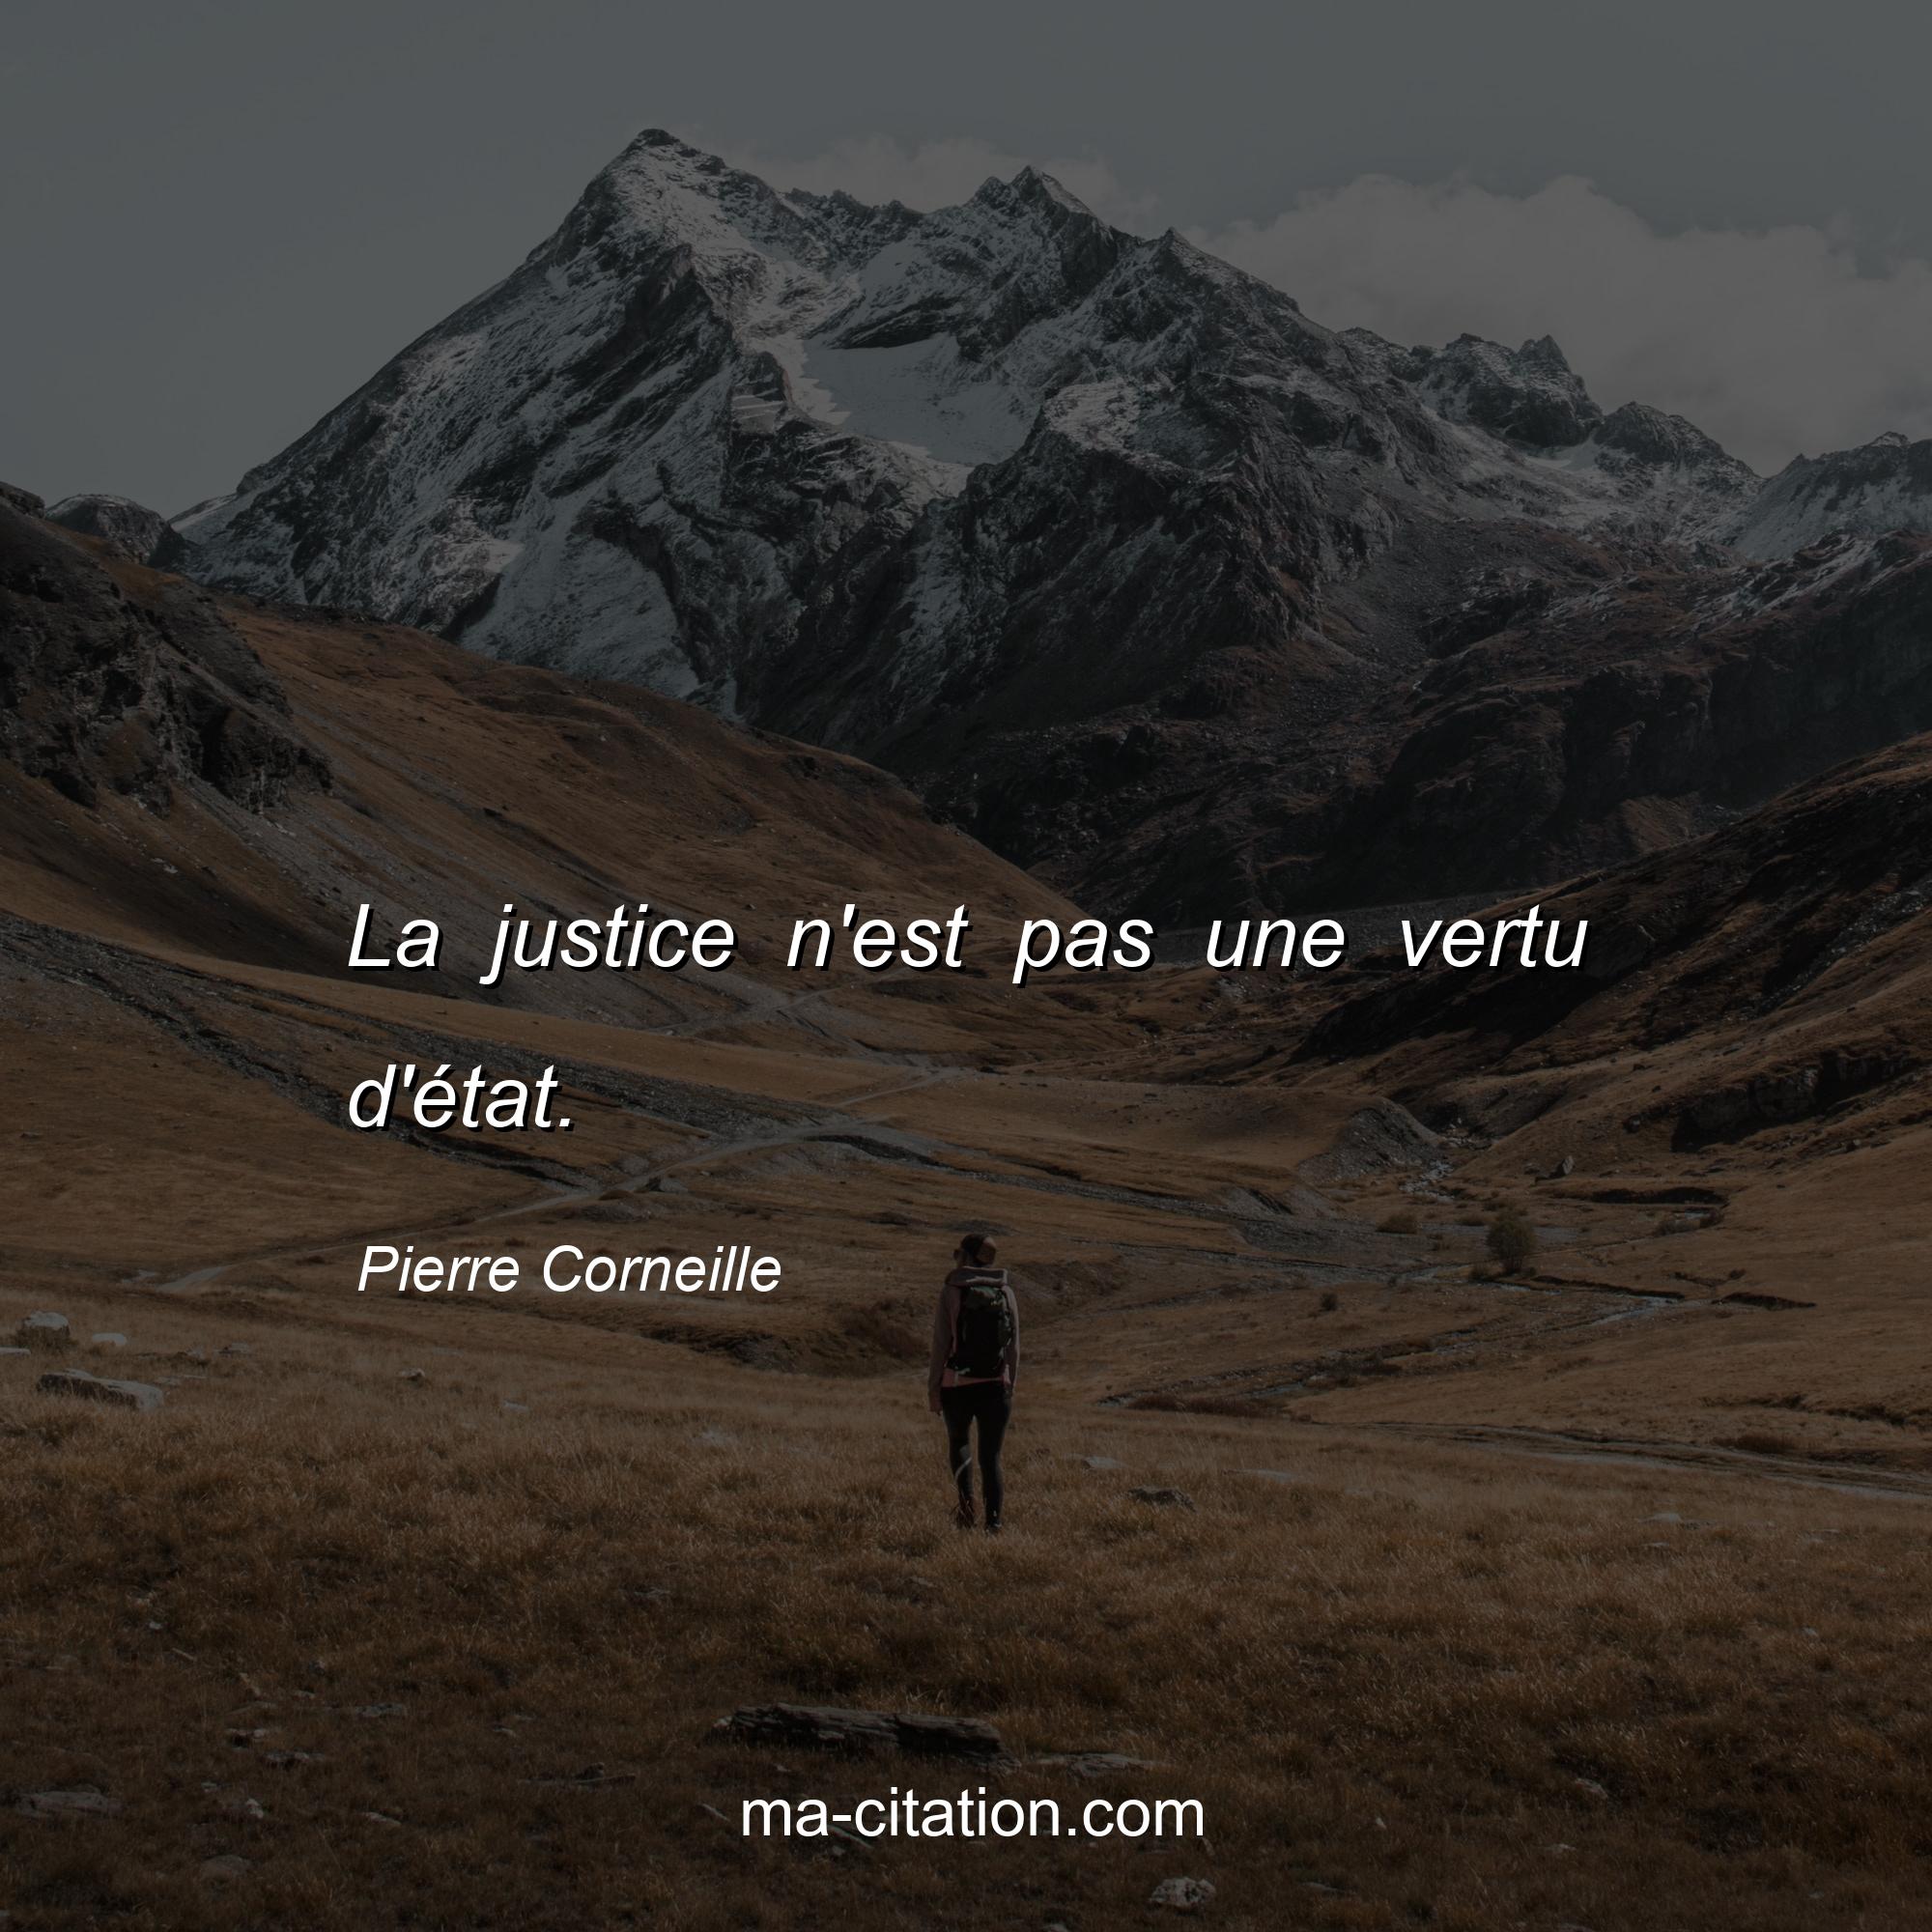 Pierre Corneille : La justice n'est pas une vertu d'état.